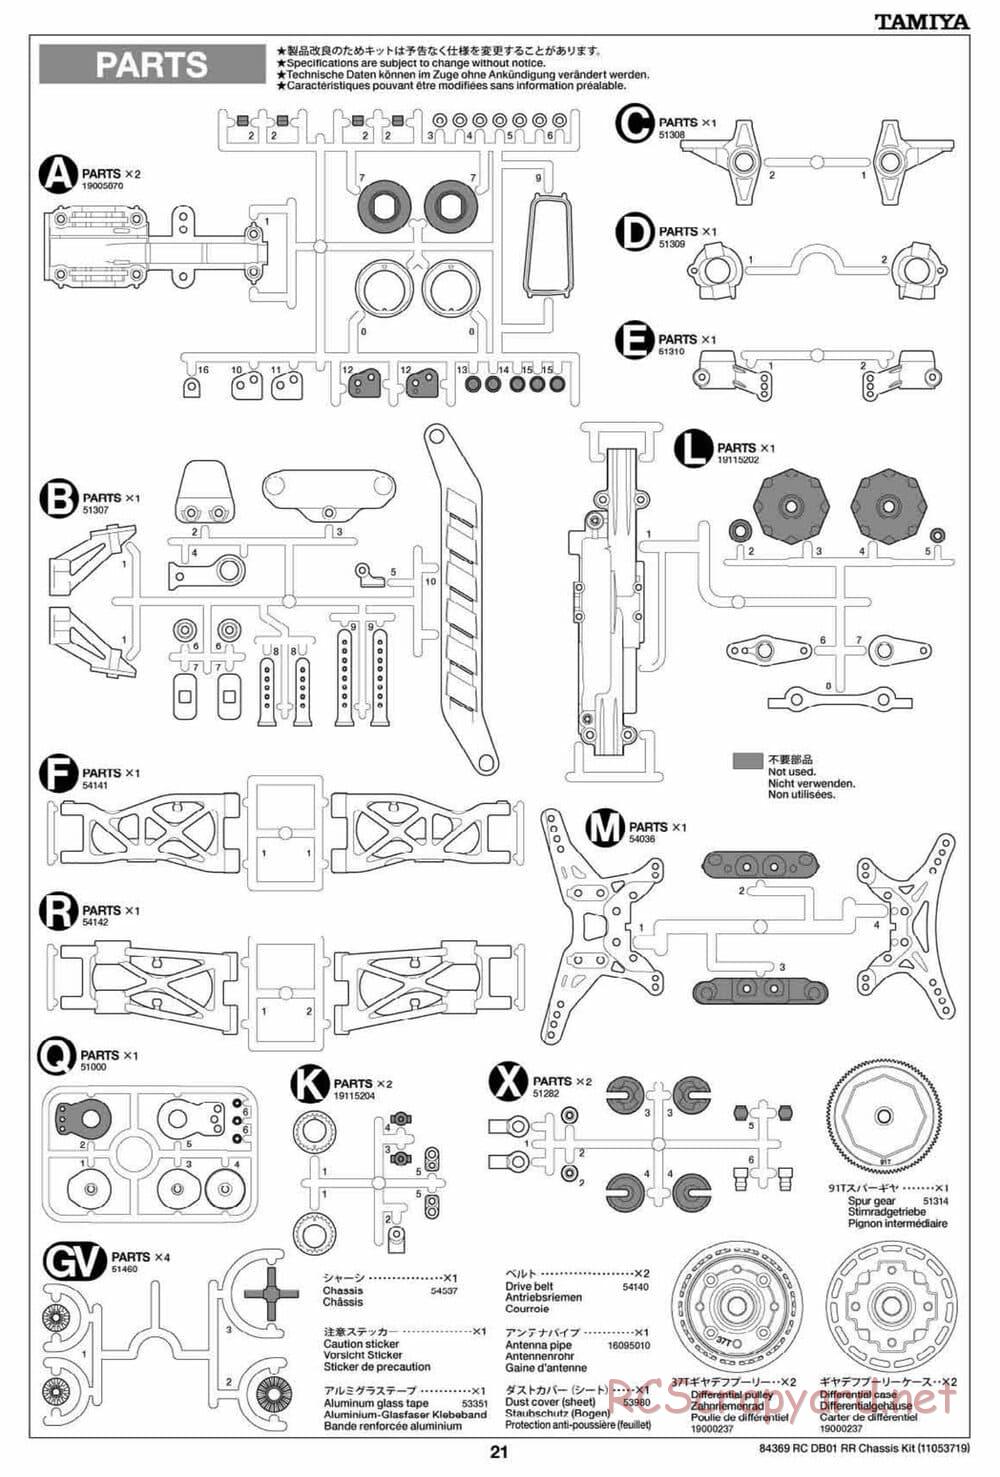 Tamiya - DB-01 RR Chassis - Manual - Page 21